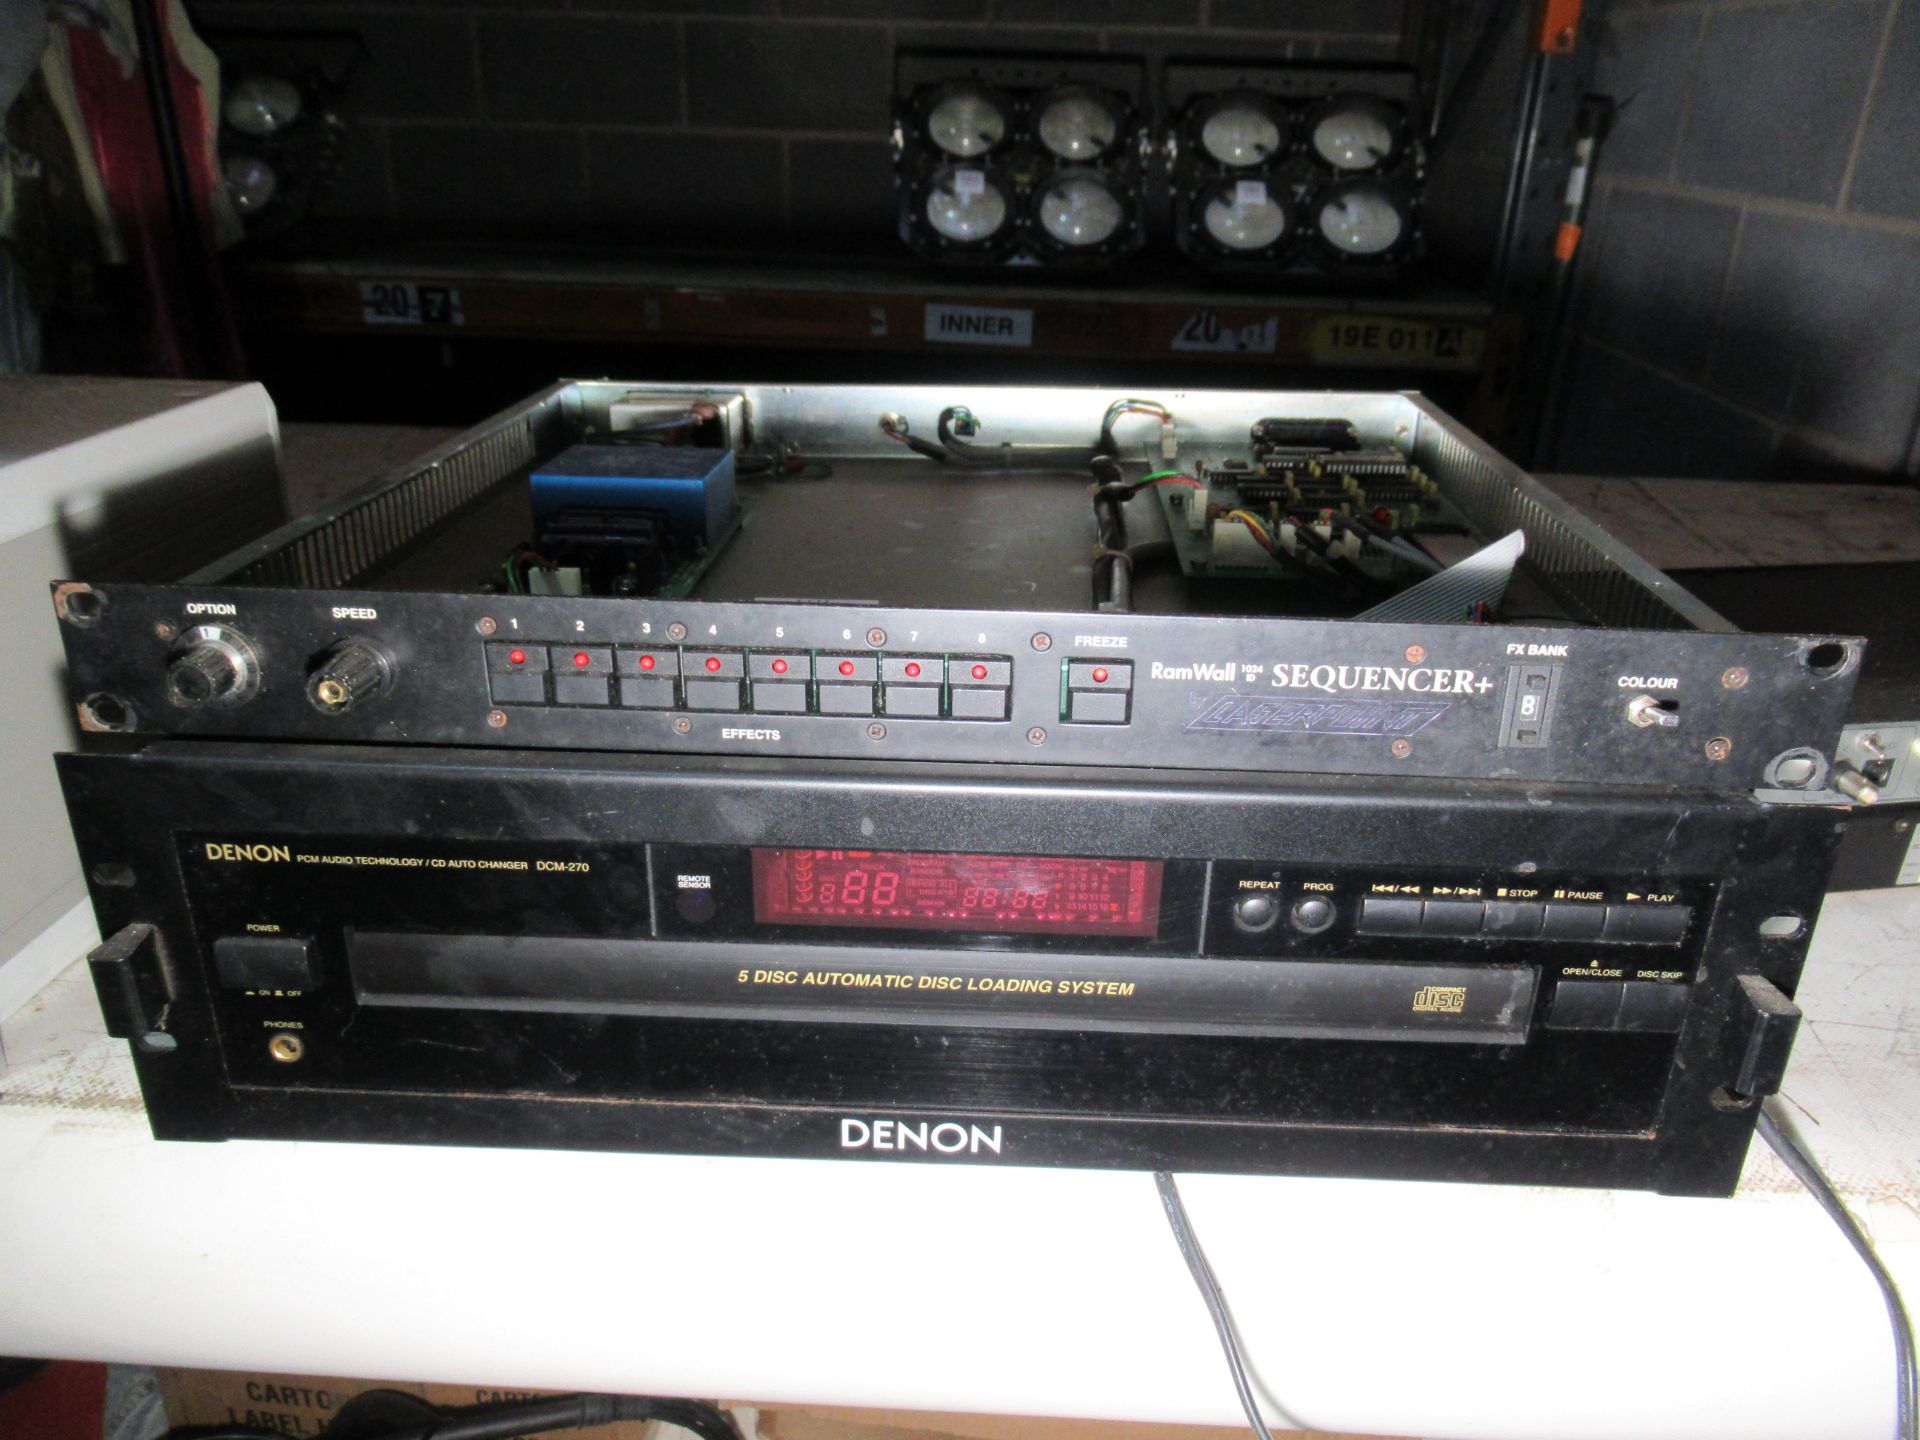 Denon DCM-270 5 Disc CD Player, Ram Wall 1042 Sequencer and a ELCA SR16 Super Regia Video Matrix Swi